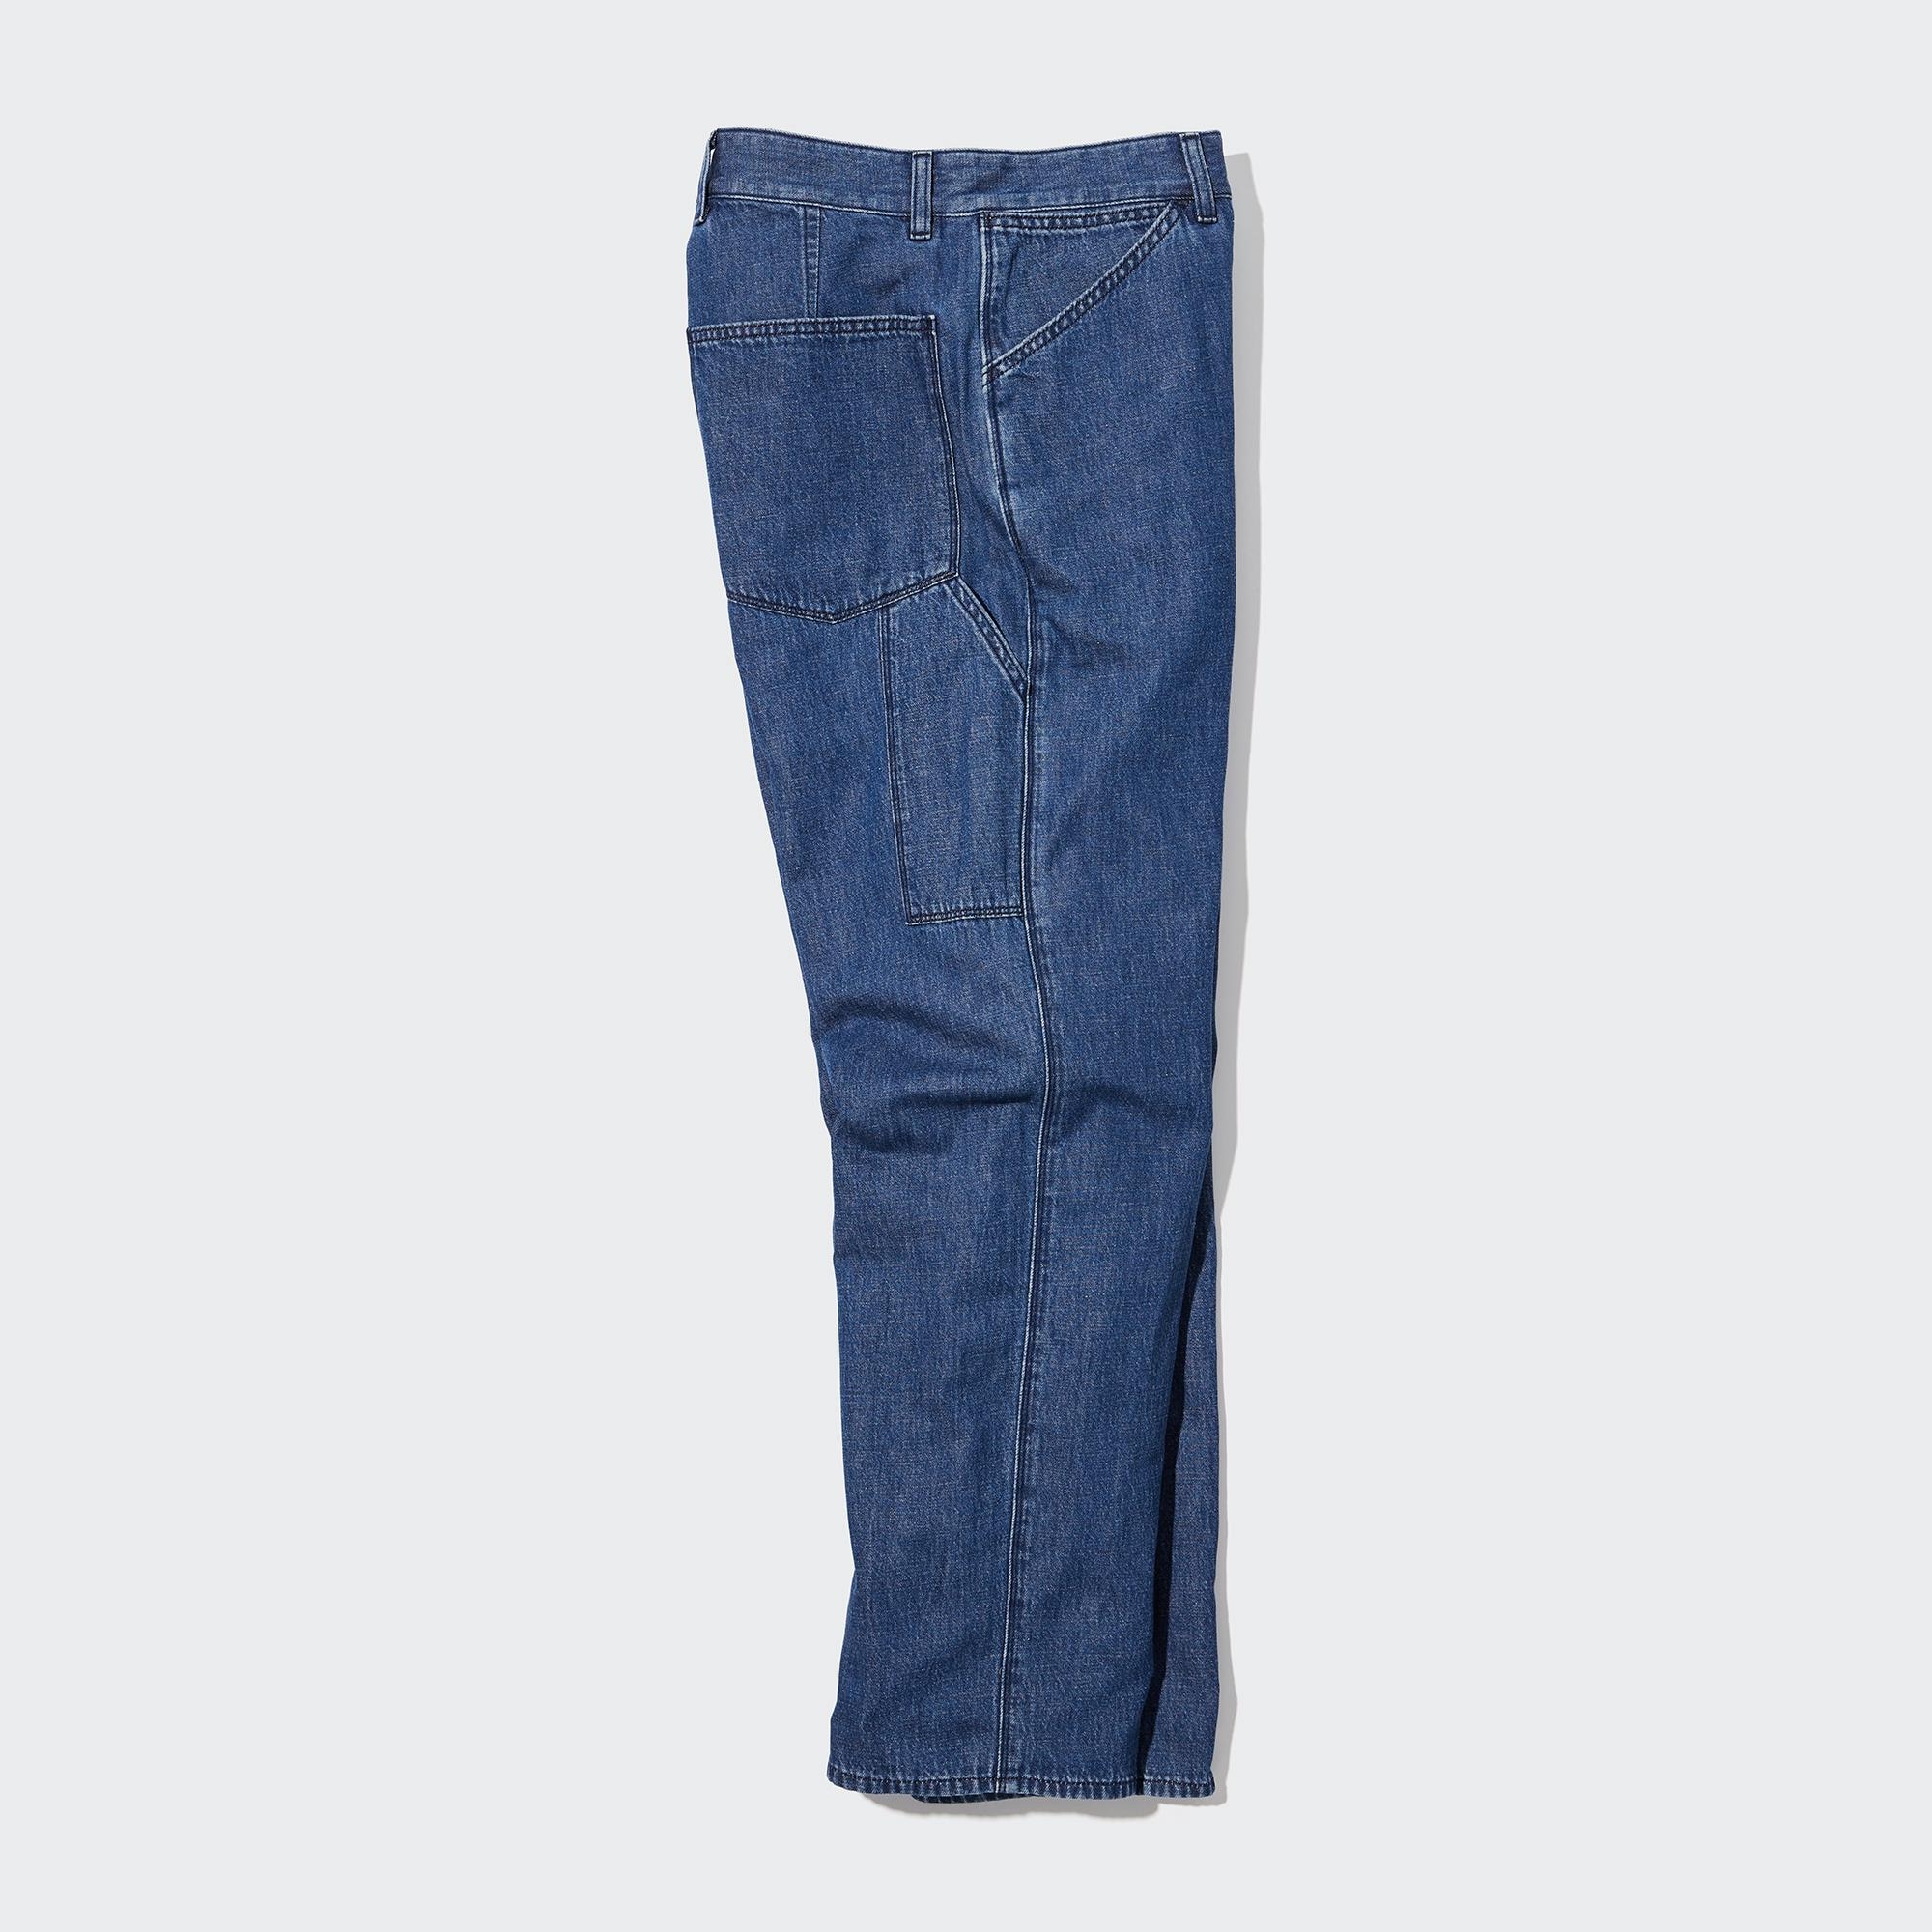 Scruffs Drezna trade Denim Work Jeans Cargo Trousers knee pad pockets | eBay